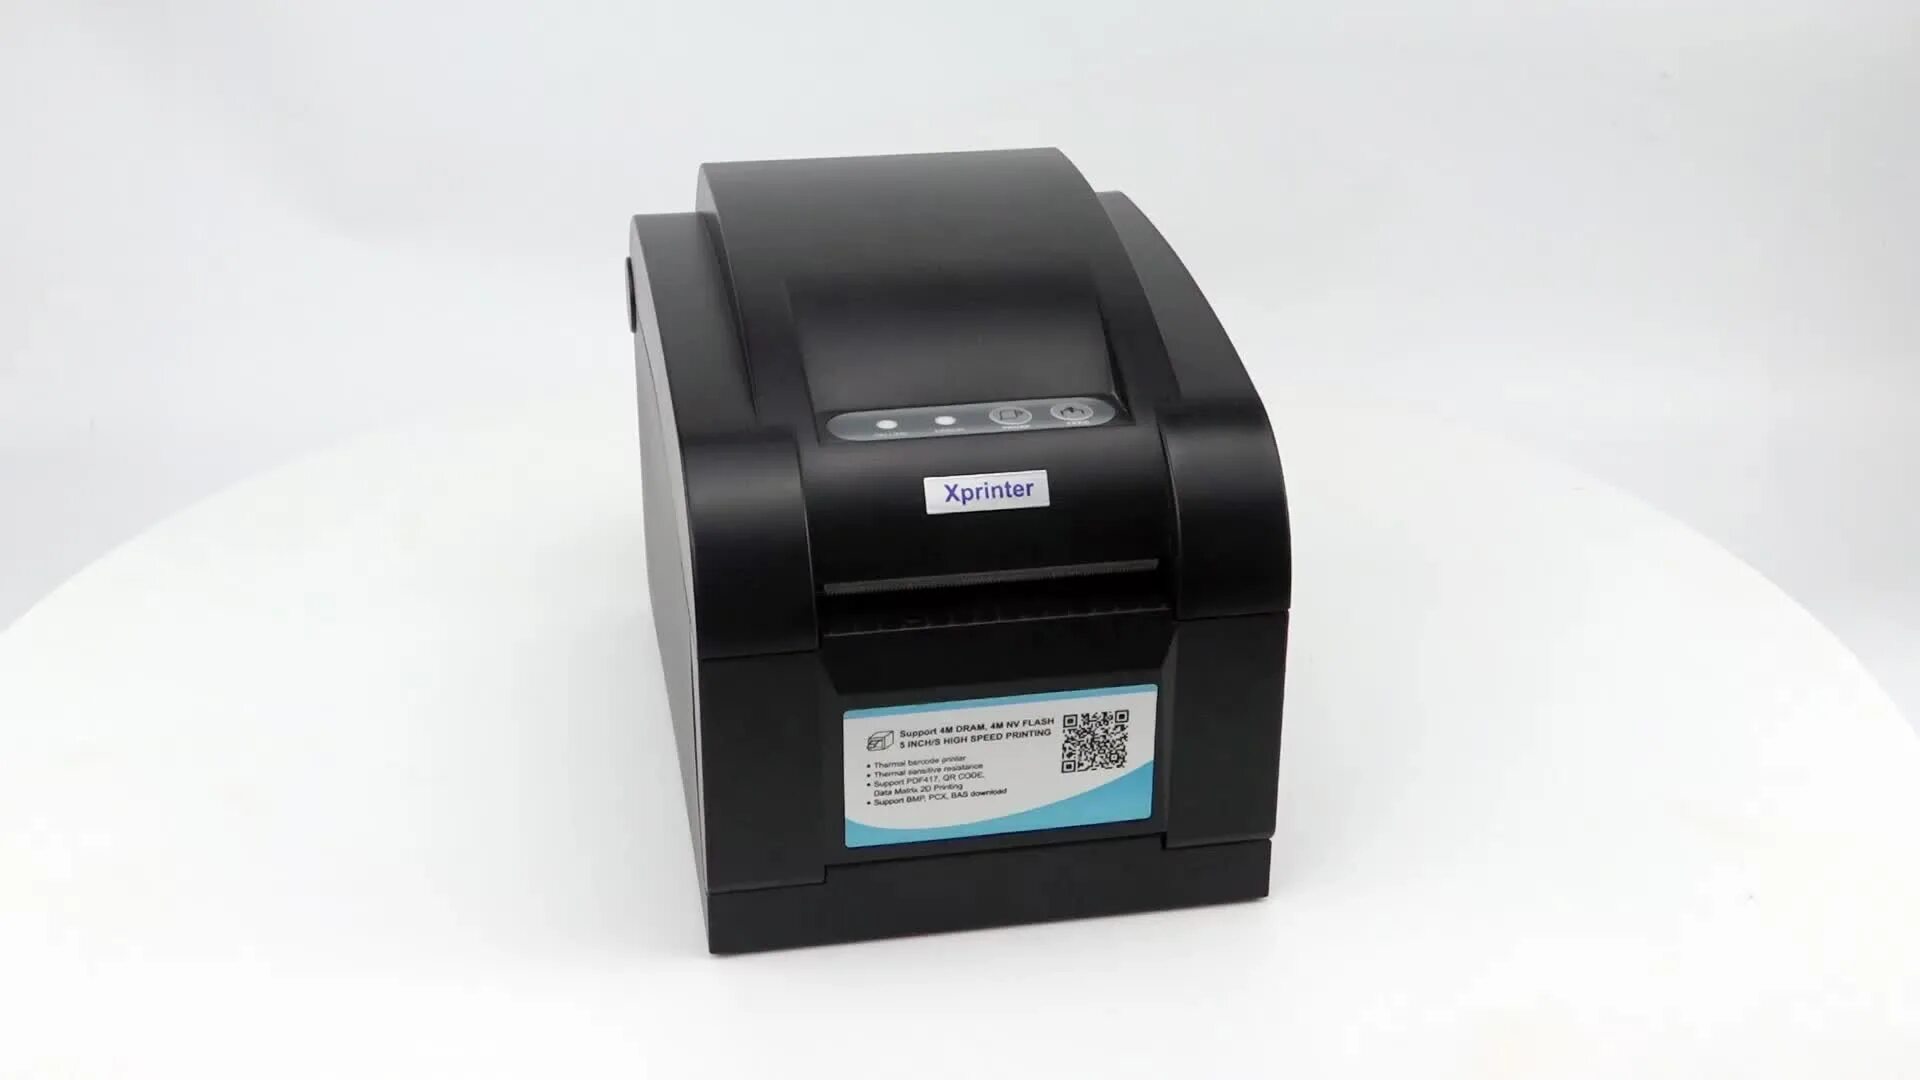 Принтер Xprinter XP-350b. Xprinter 350b. Принтер (термо) Xprinter XP-350 BM. Barcode Printer 350b. Xprinter как настроить печать